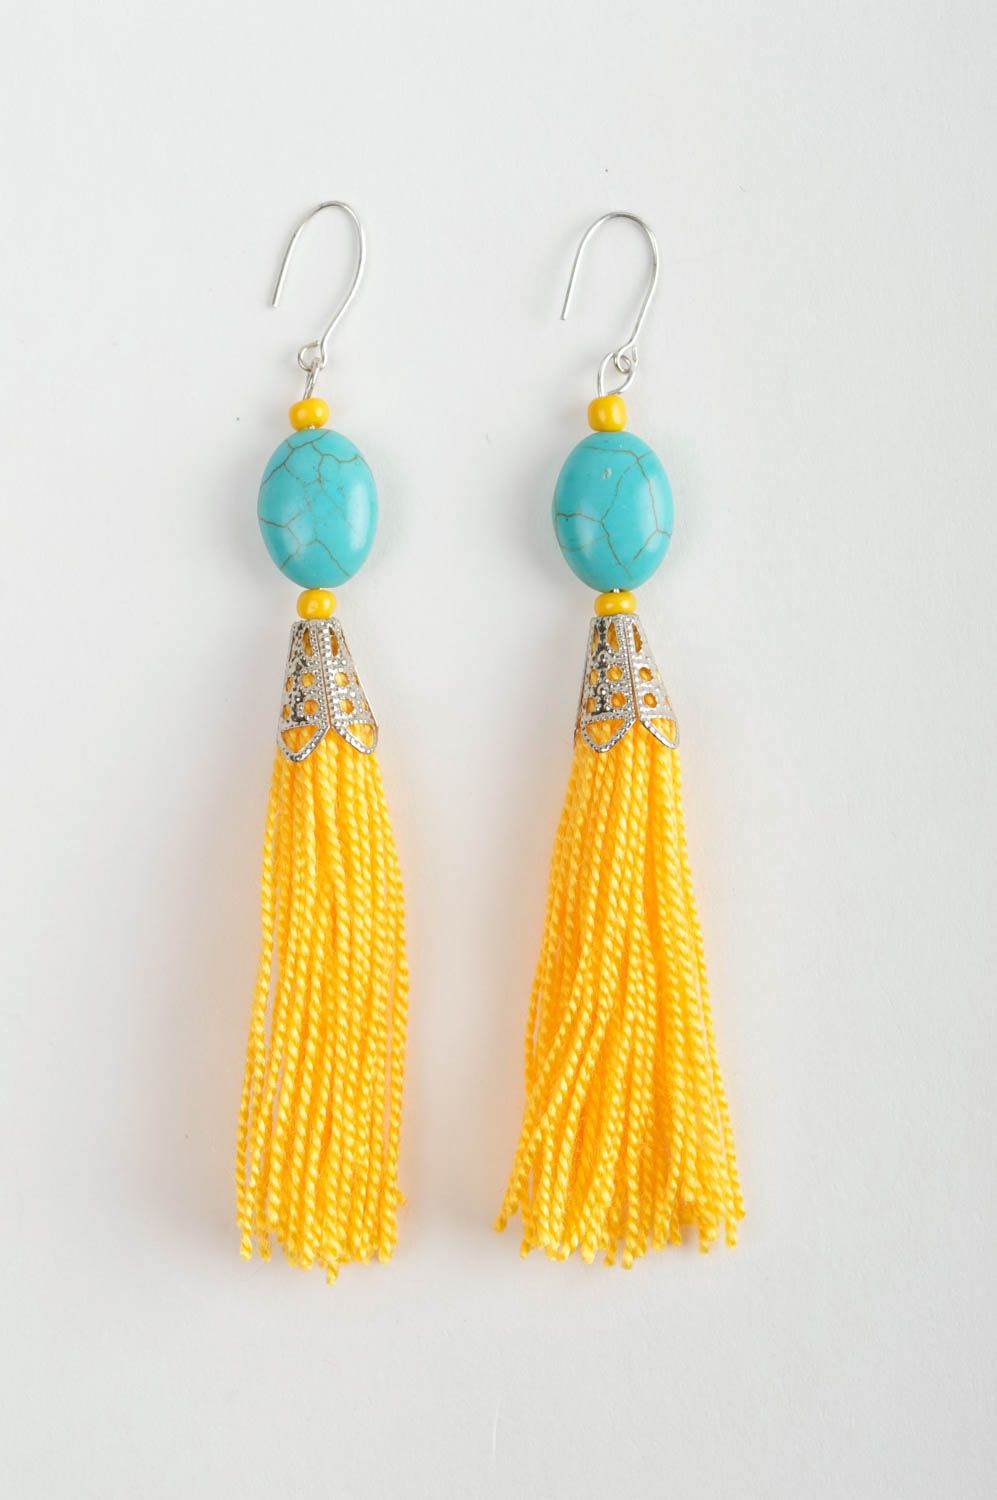 Ожерелье из ниток украшения ручной работы длинные серьги желтые с голубым фото 5